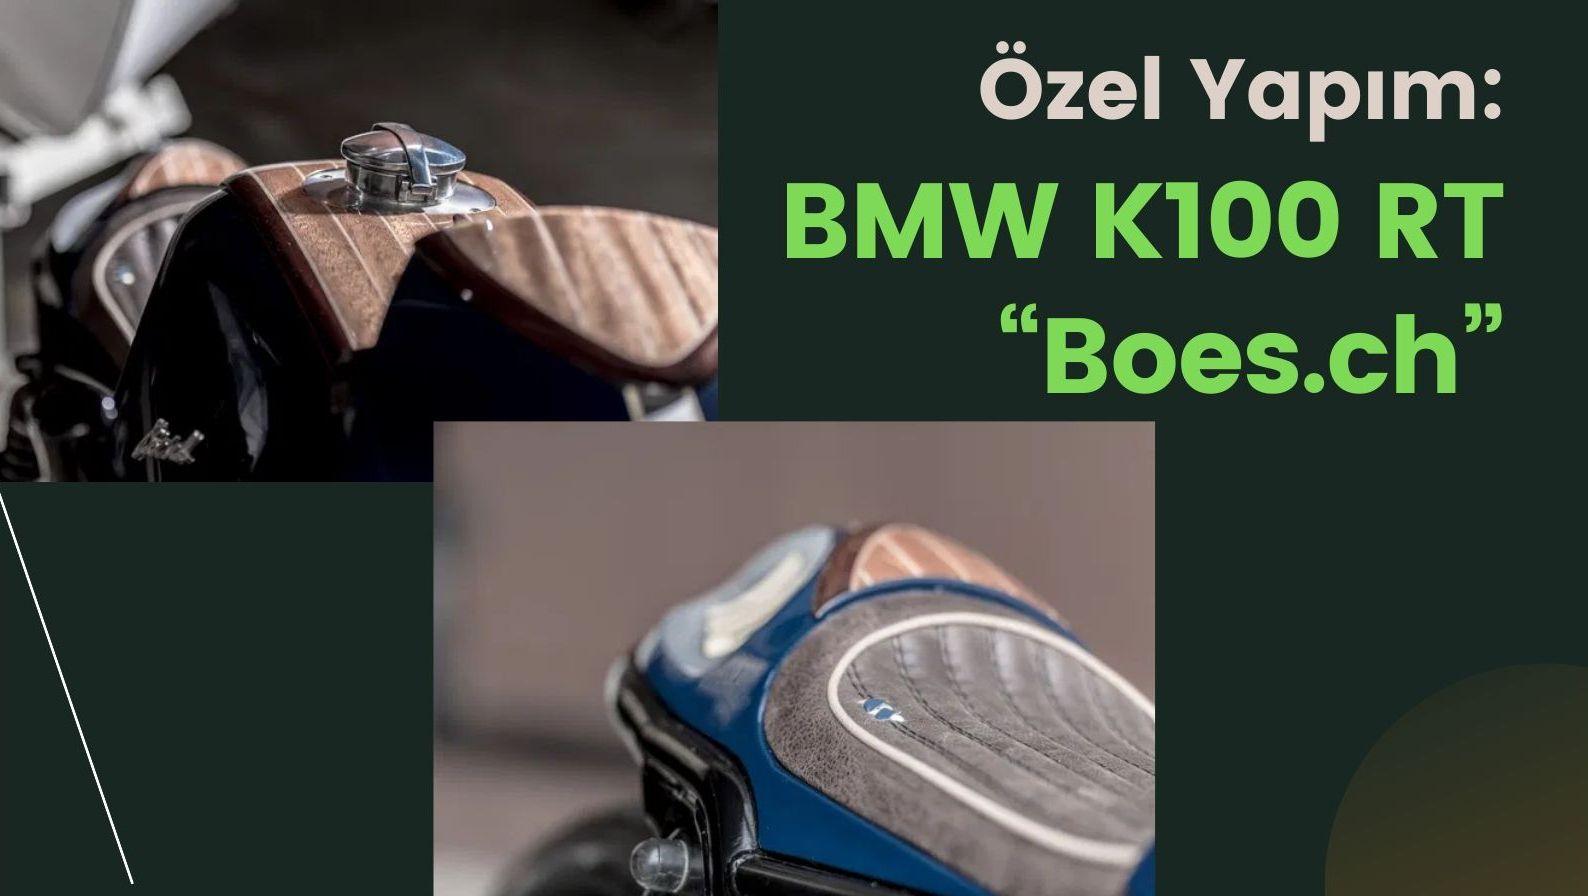 Özel Yapım BMW Motosiklet: BMW K100 RT “Boes.ch”